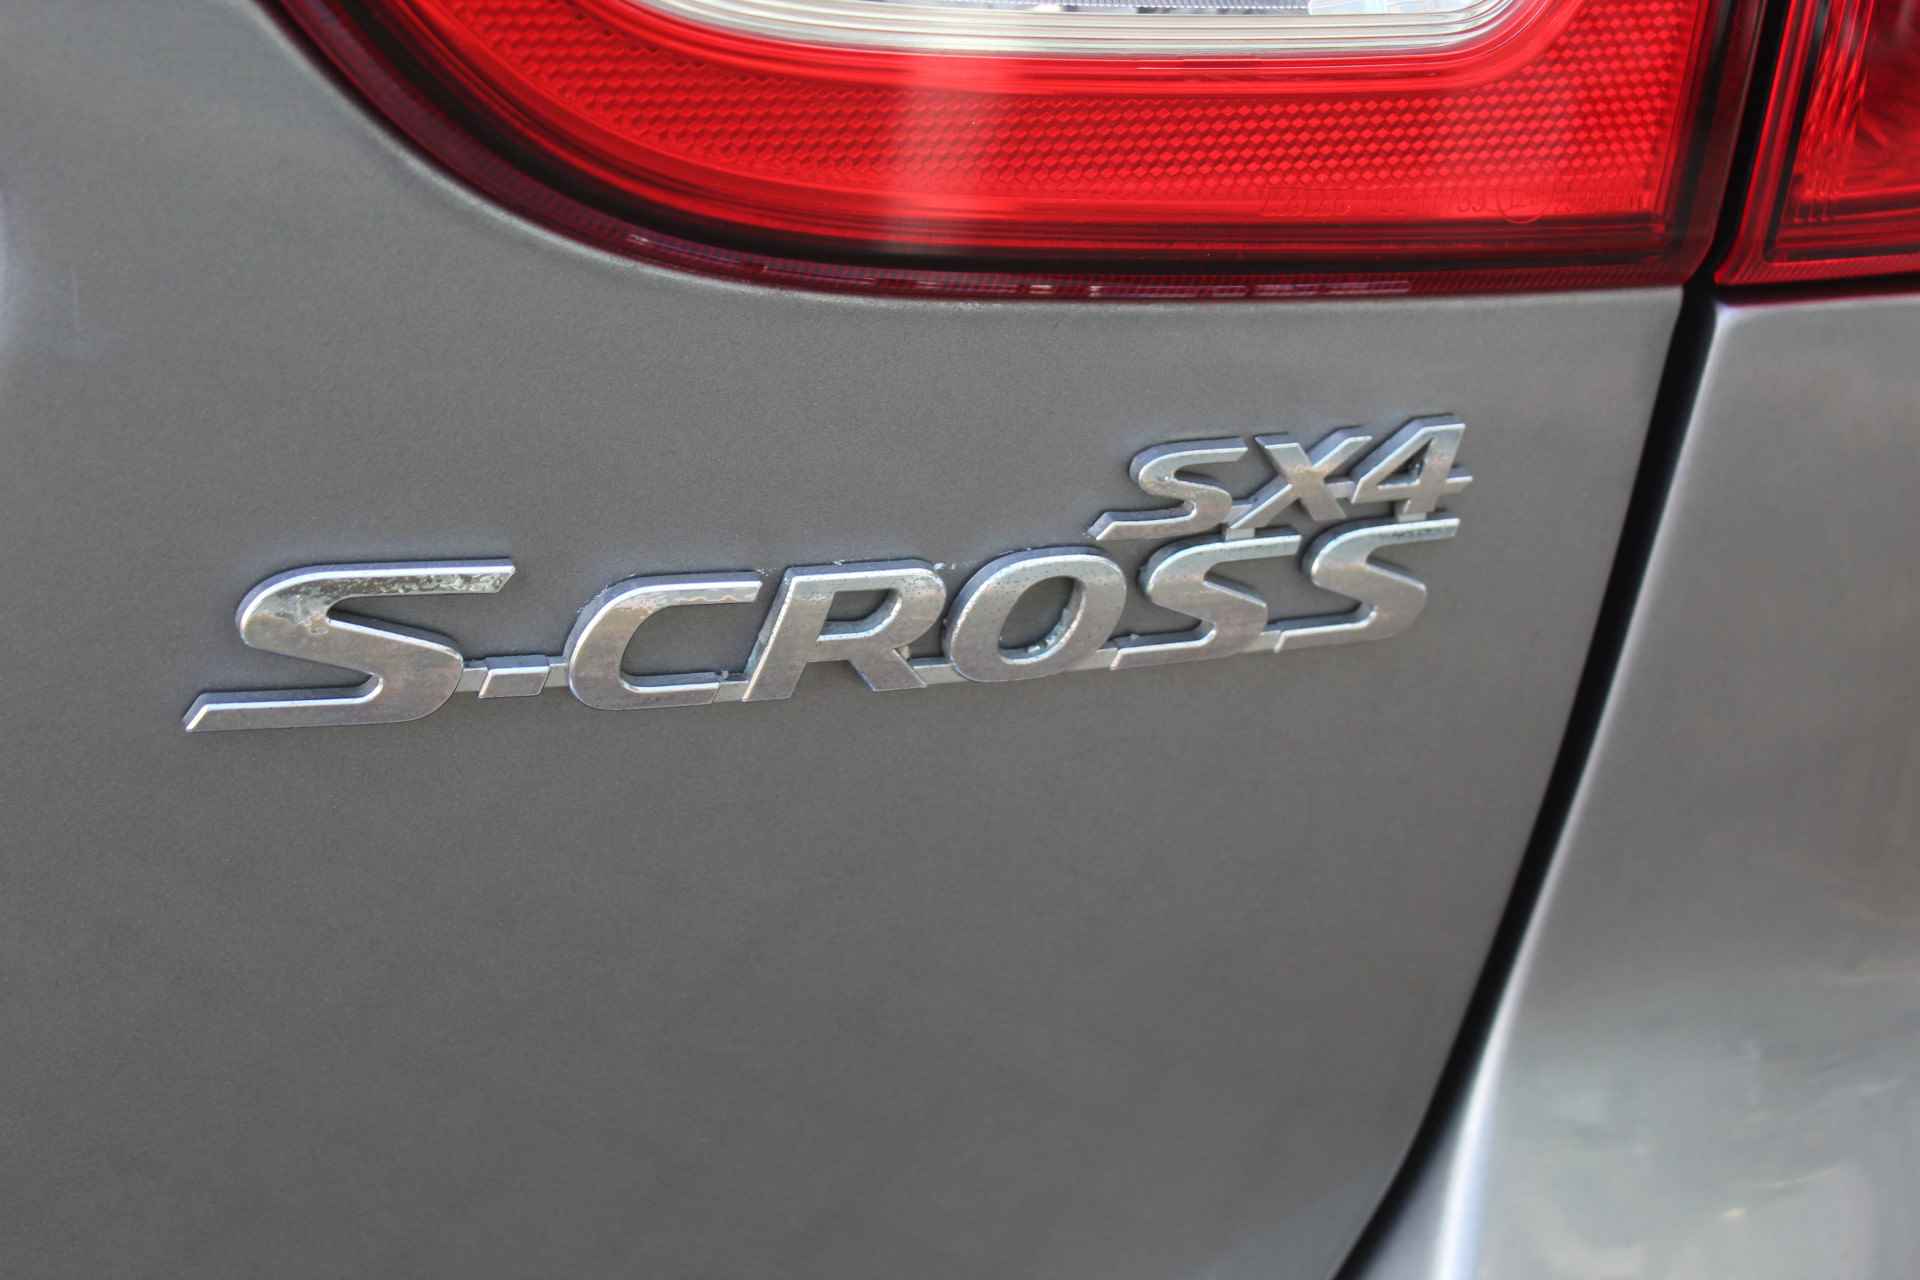 Suzuki S-Cross 1.6-120pk Comfort. Hoge zit ! Volautm. airco dual, telefoonvoorb., navigatie, cruise control, LM wielen, camera, trekhaak, metallic lak, verwarmde stoelen etc. - 35/46